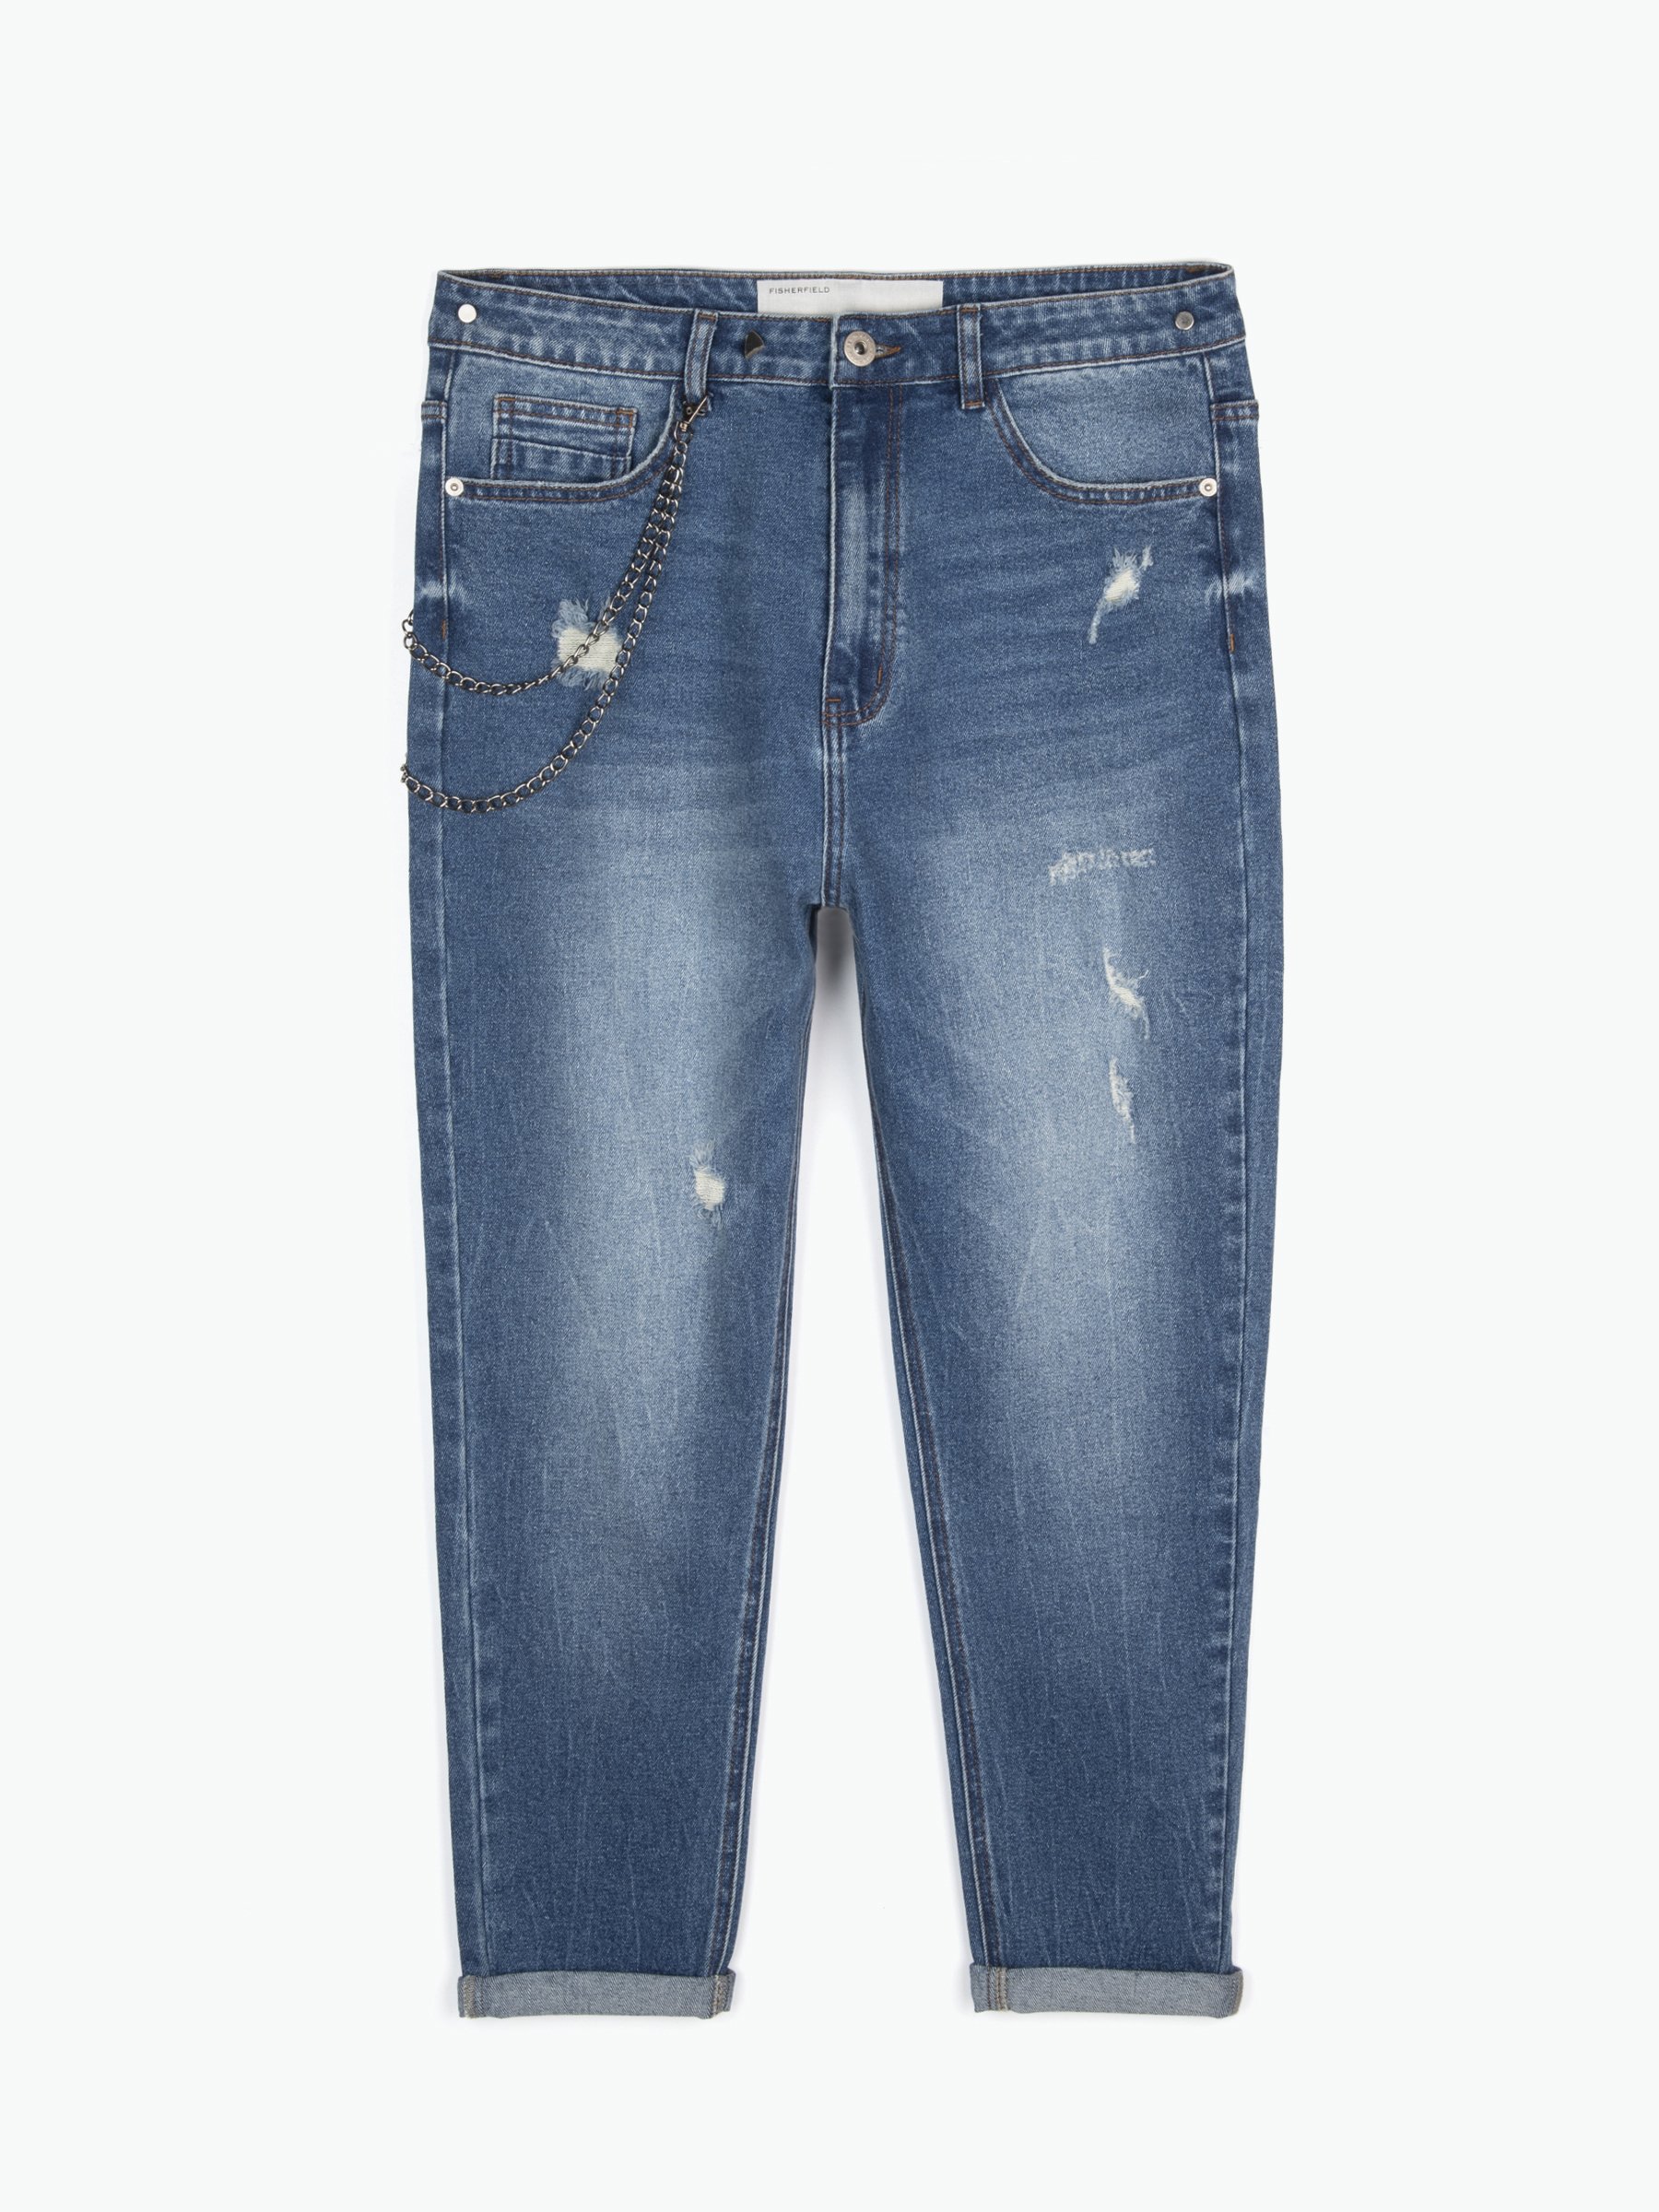 fcity.in - Trendy Style Cotton Denim Damage Jeans / Modern Fancy Jeans